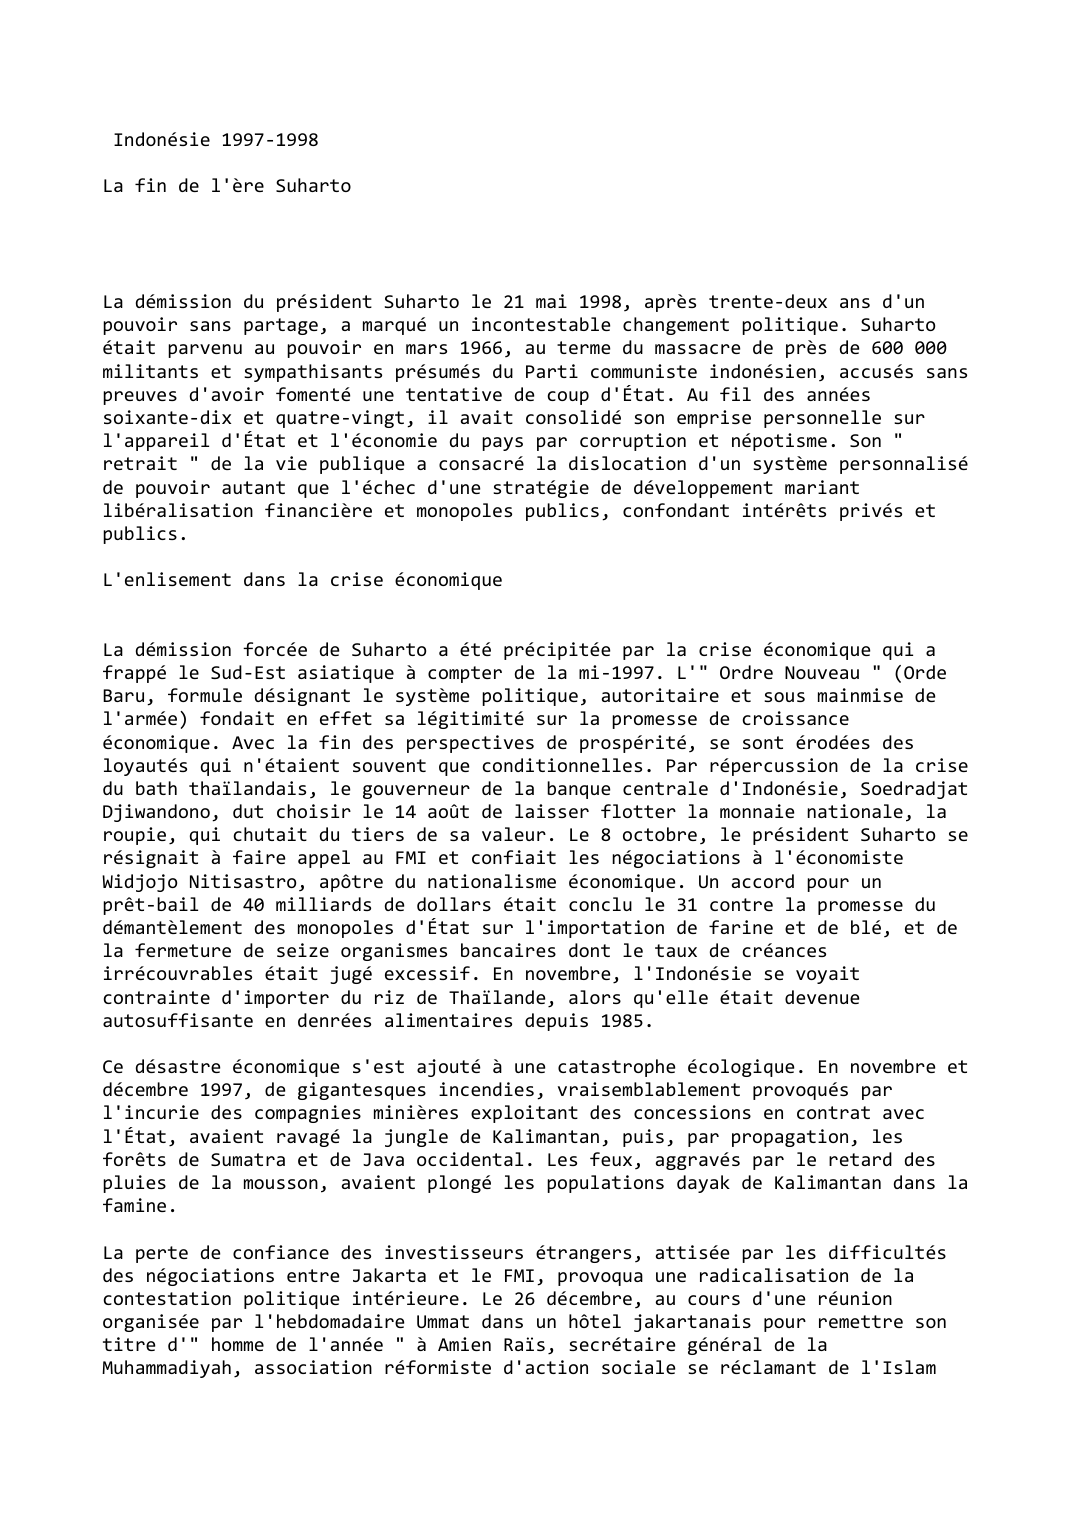 Prévisualisation du document Indonésie (1997-1998)

La fin de l'ère Suharto